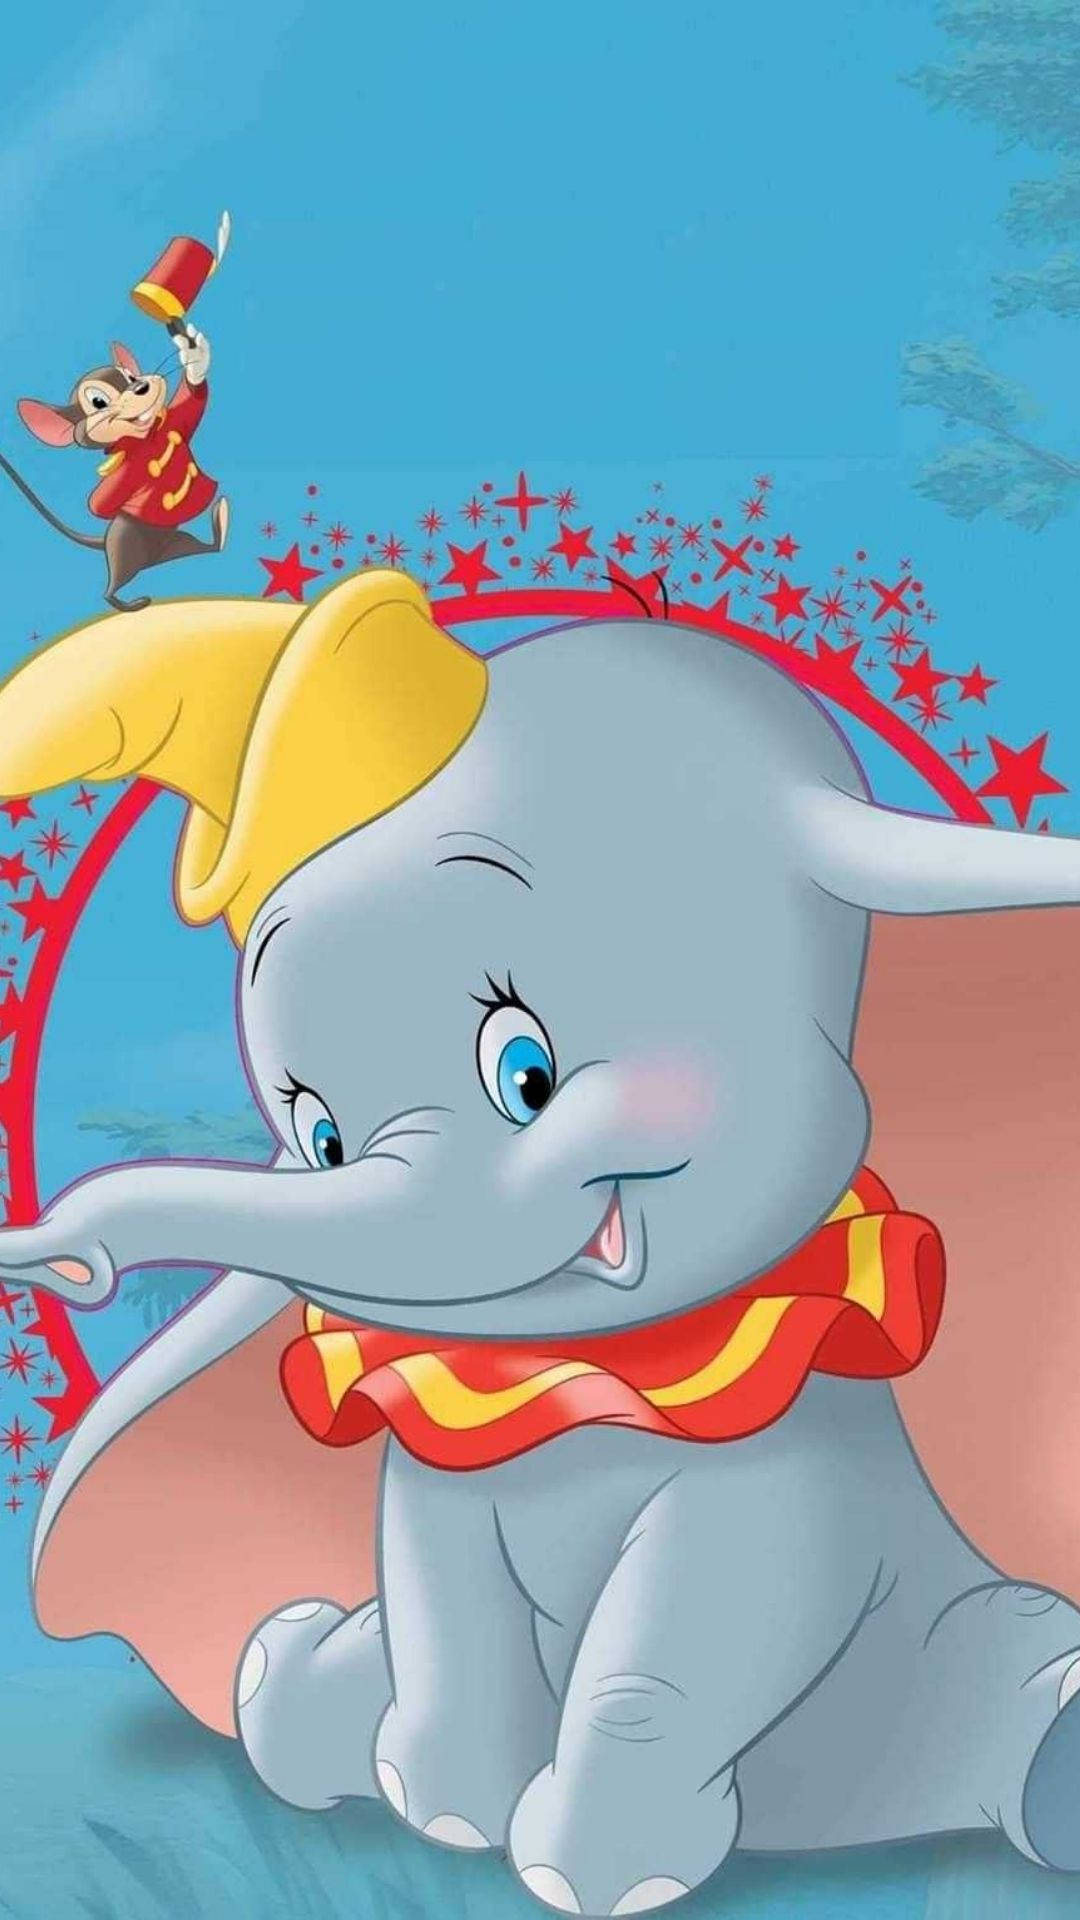 Bubbly Elephant Dumbo Wallpaper